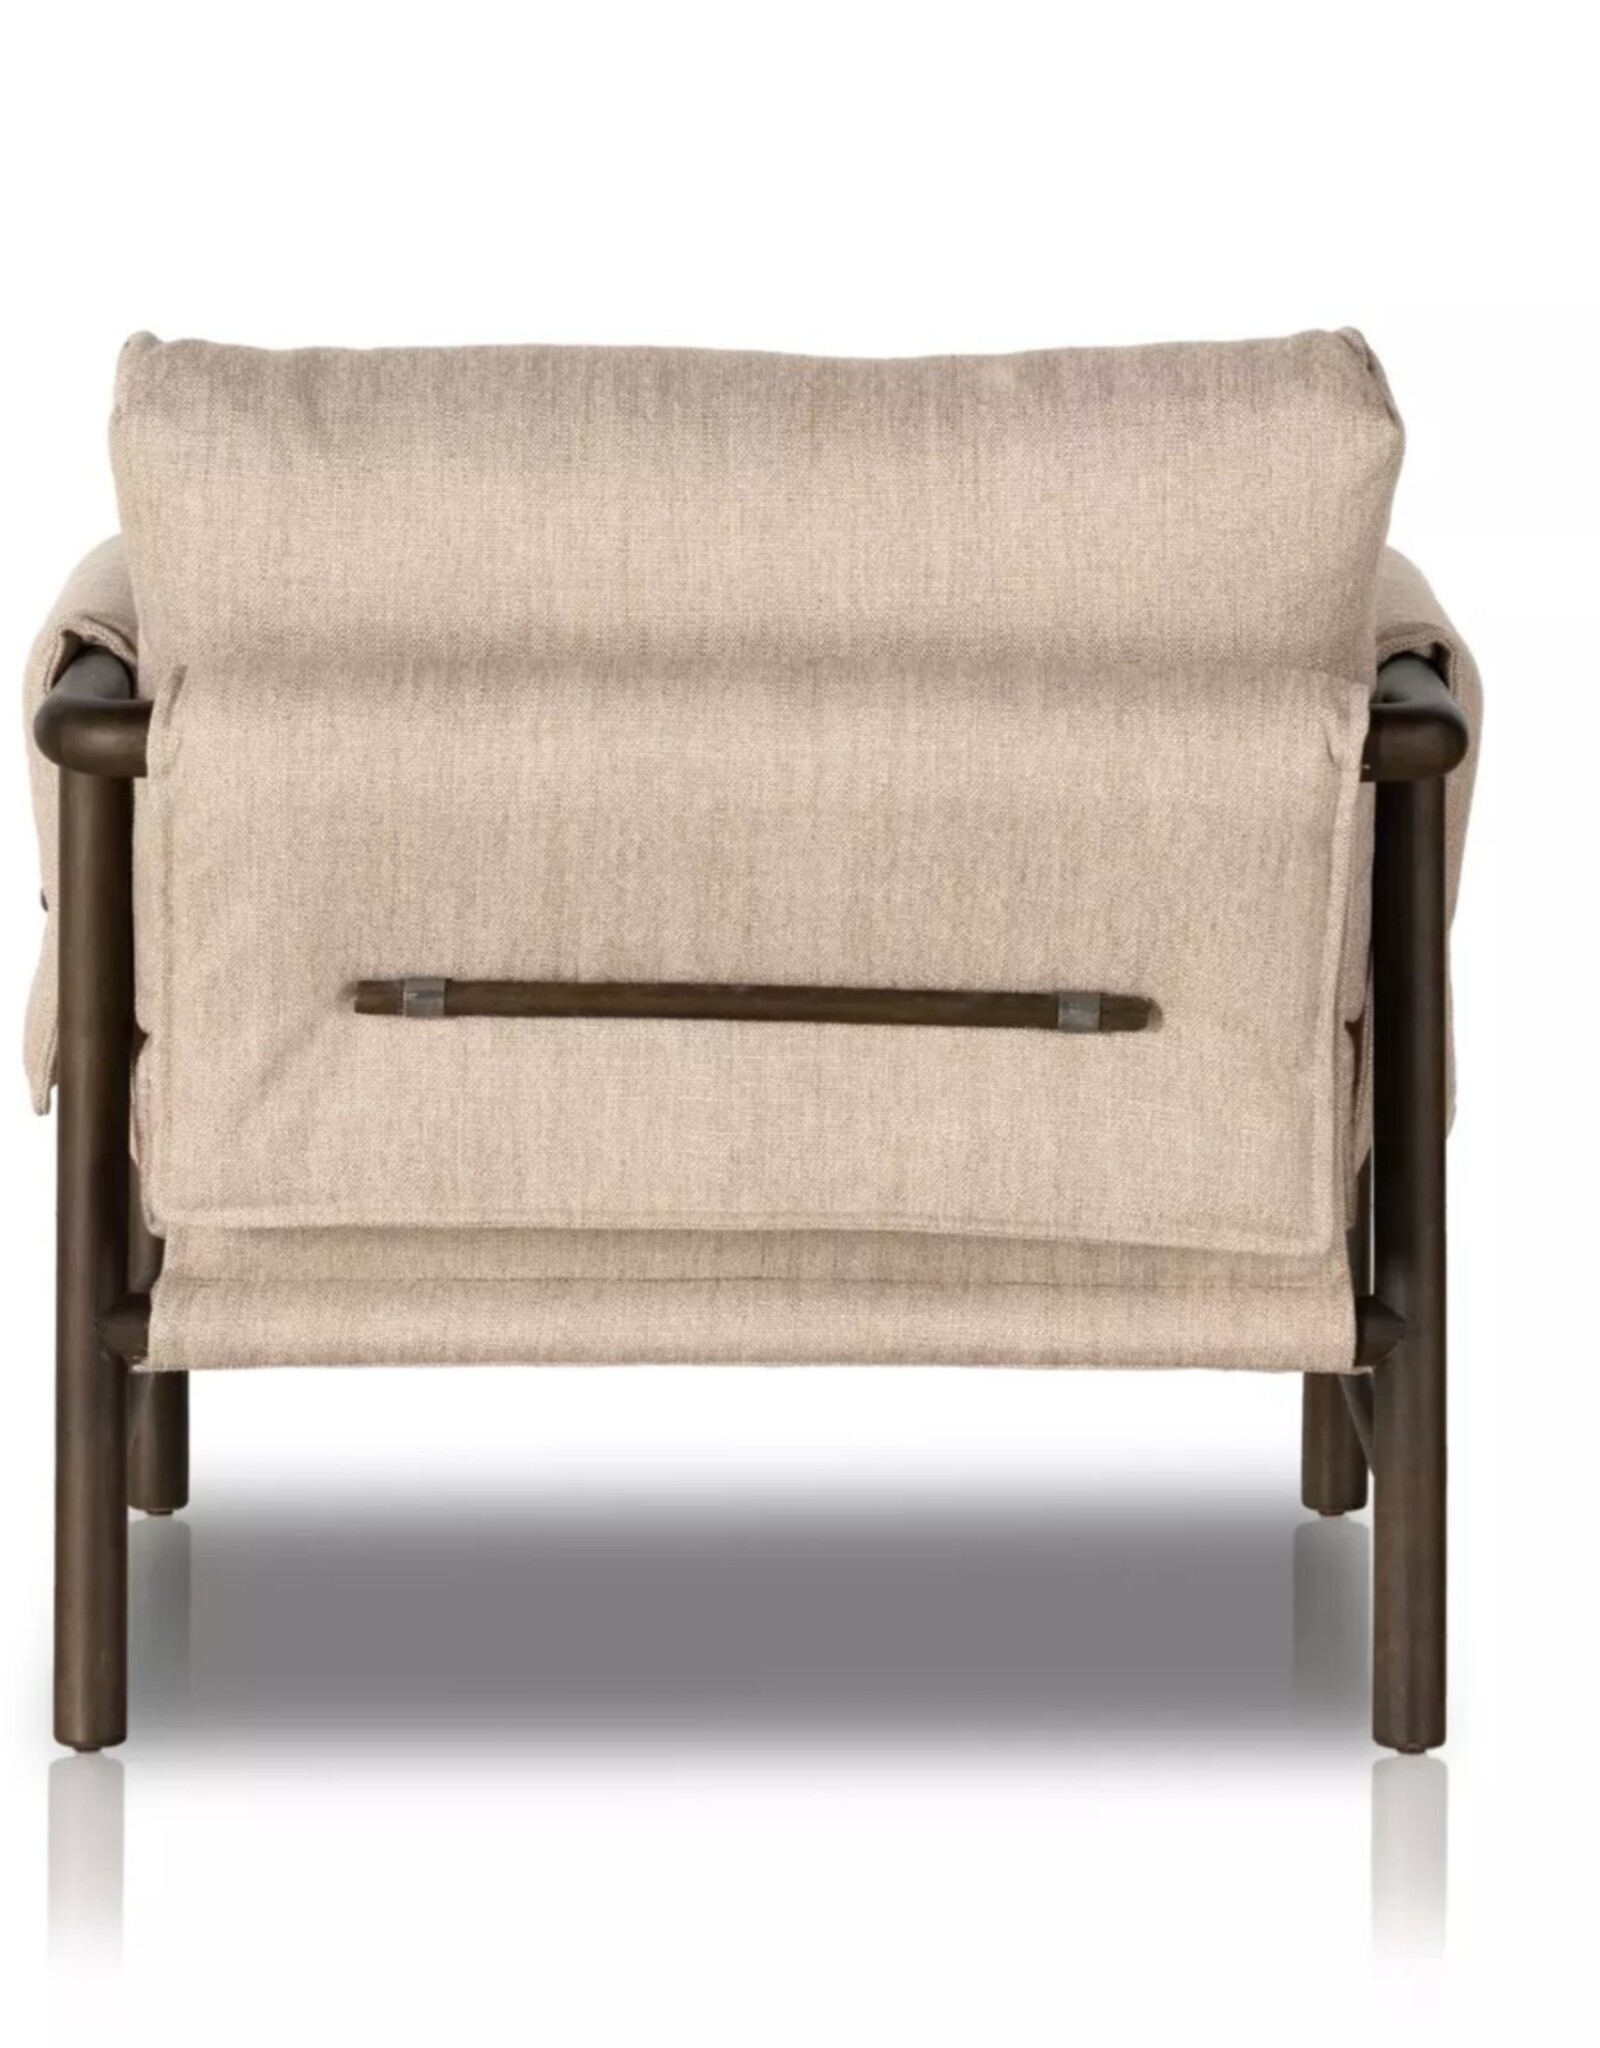 Harrison Chair in Alcala Wheat